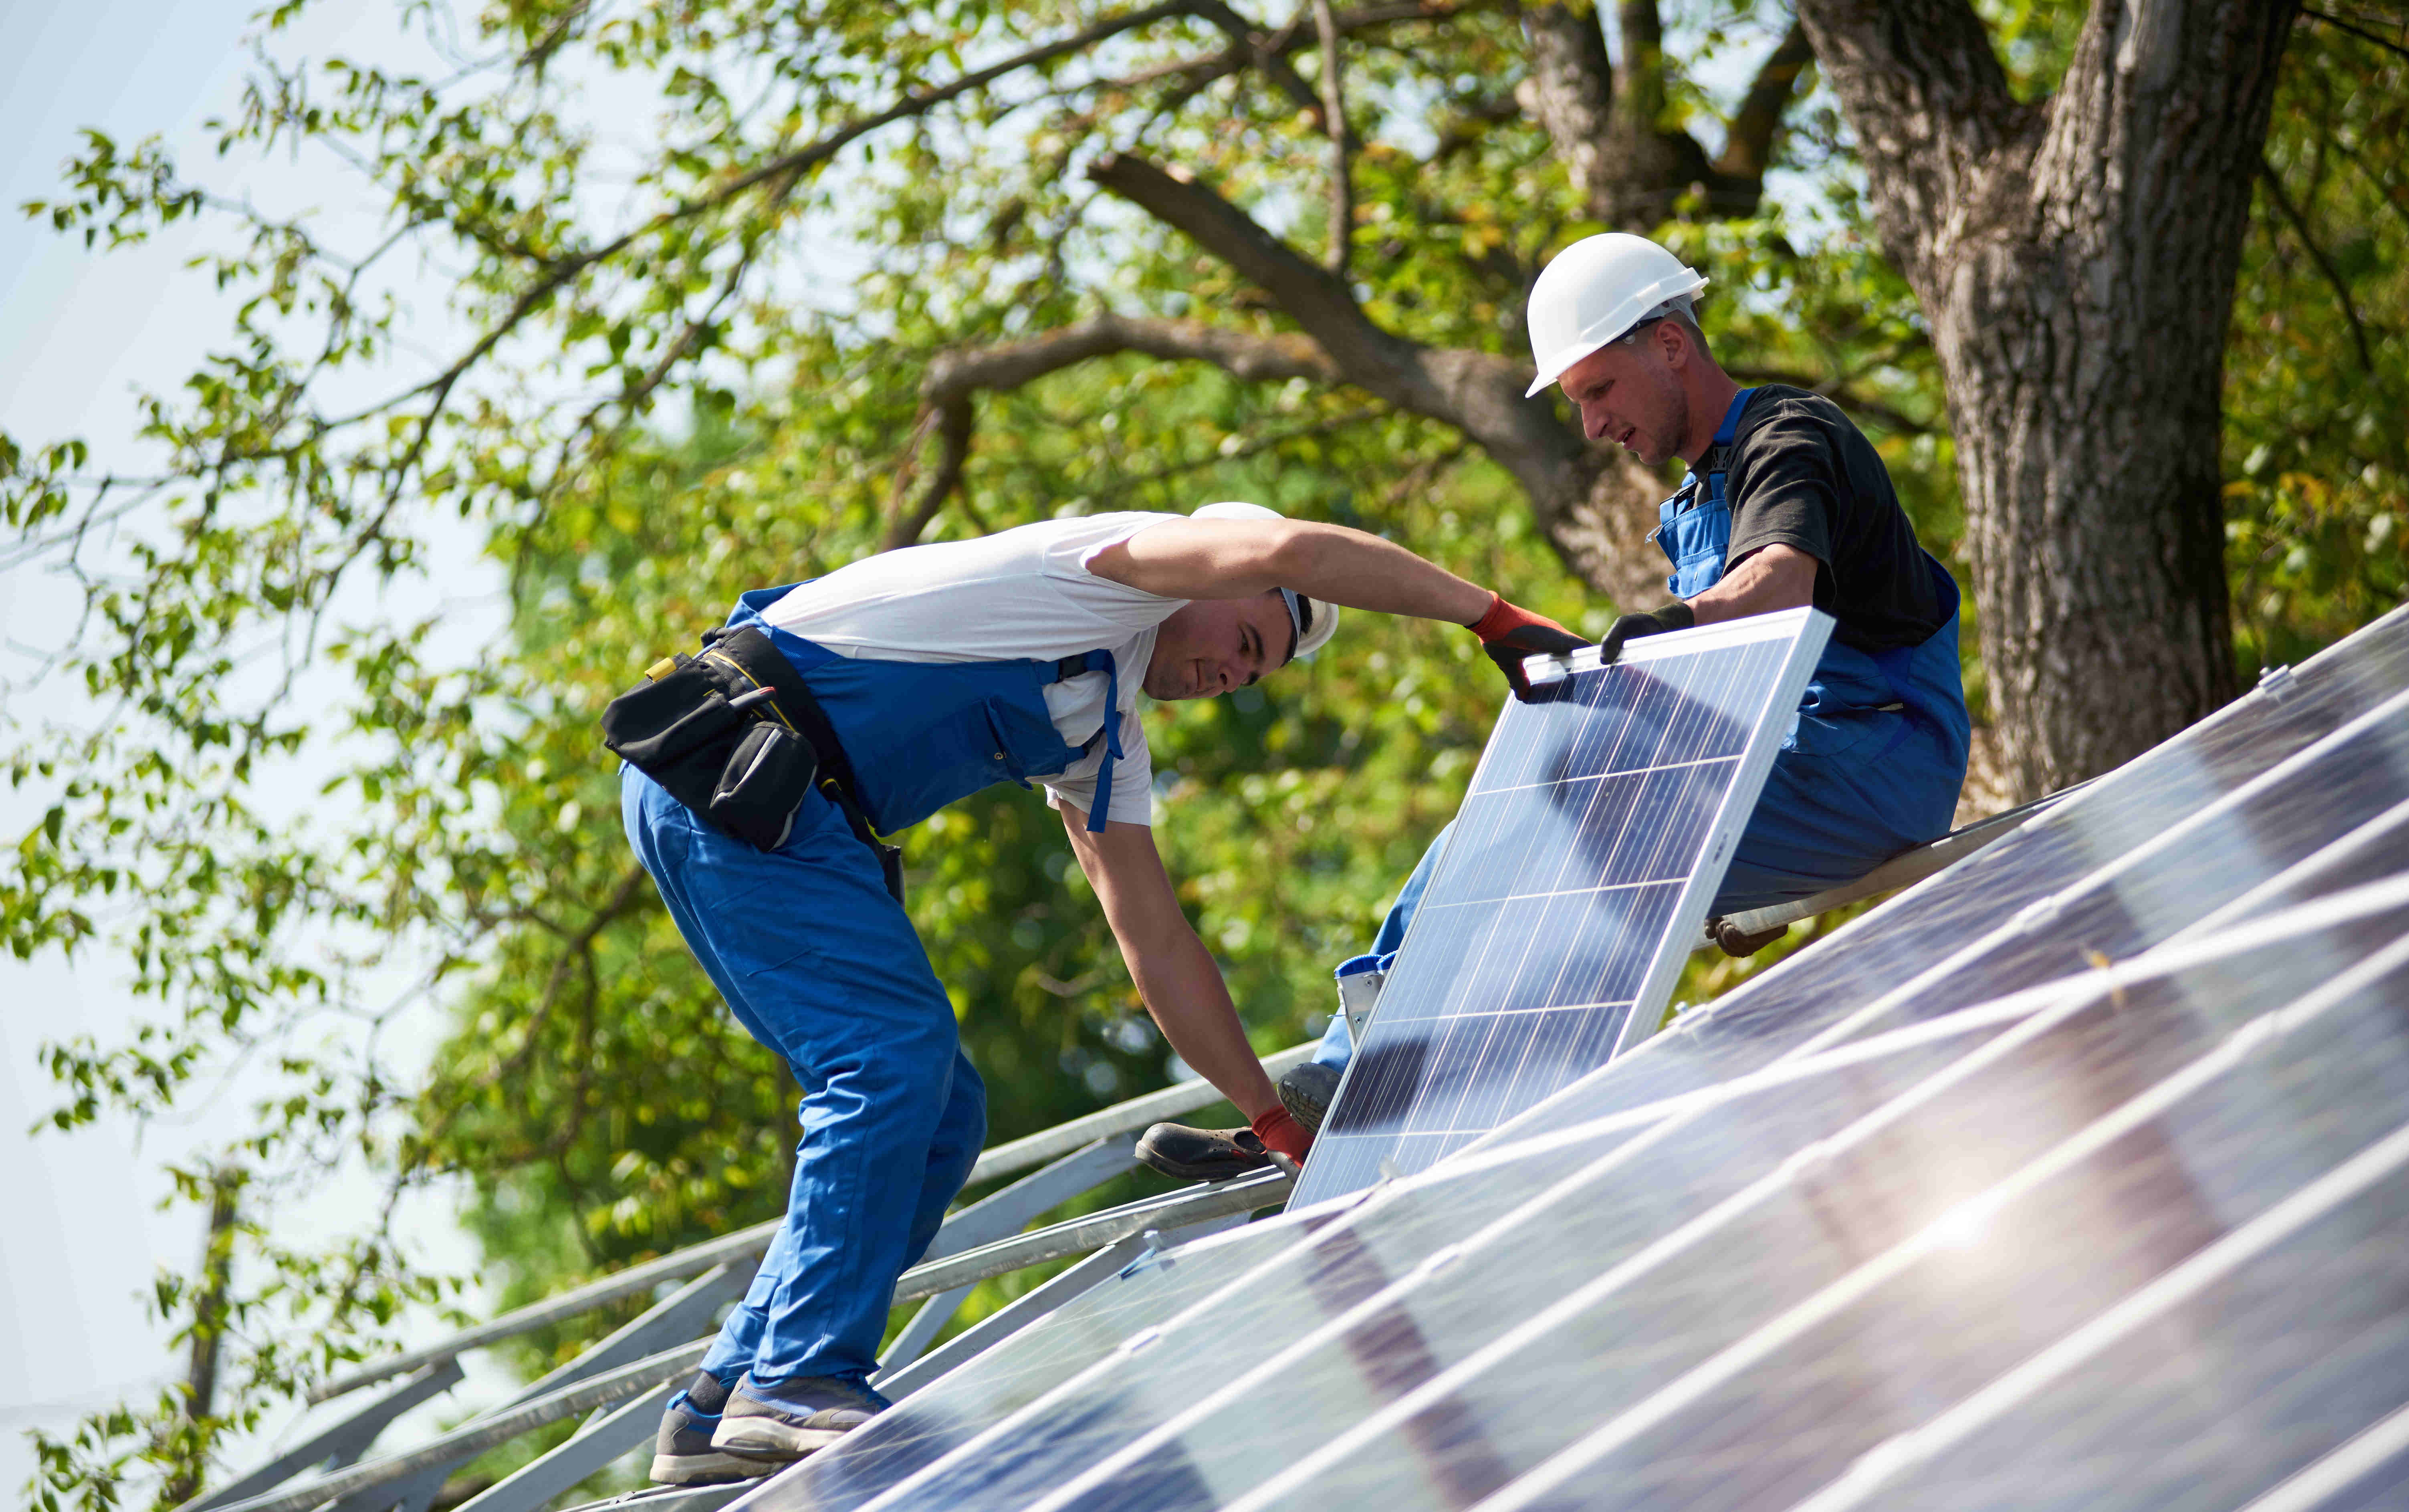 Una investigación encontró que aproximadamente un tercio de los participantes consideran comprar un sistema fotovoltaico en Alemania